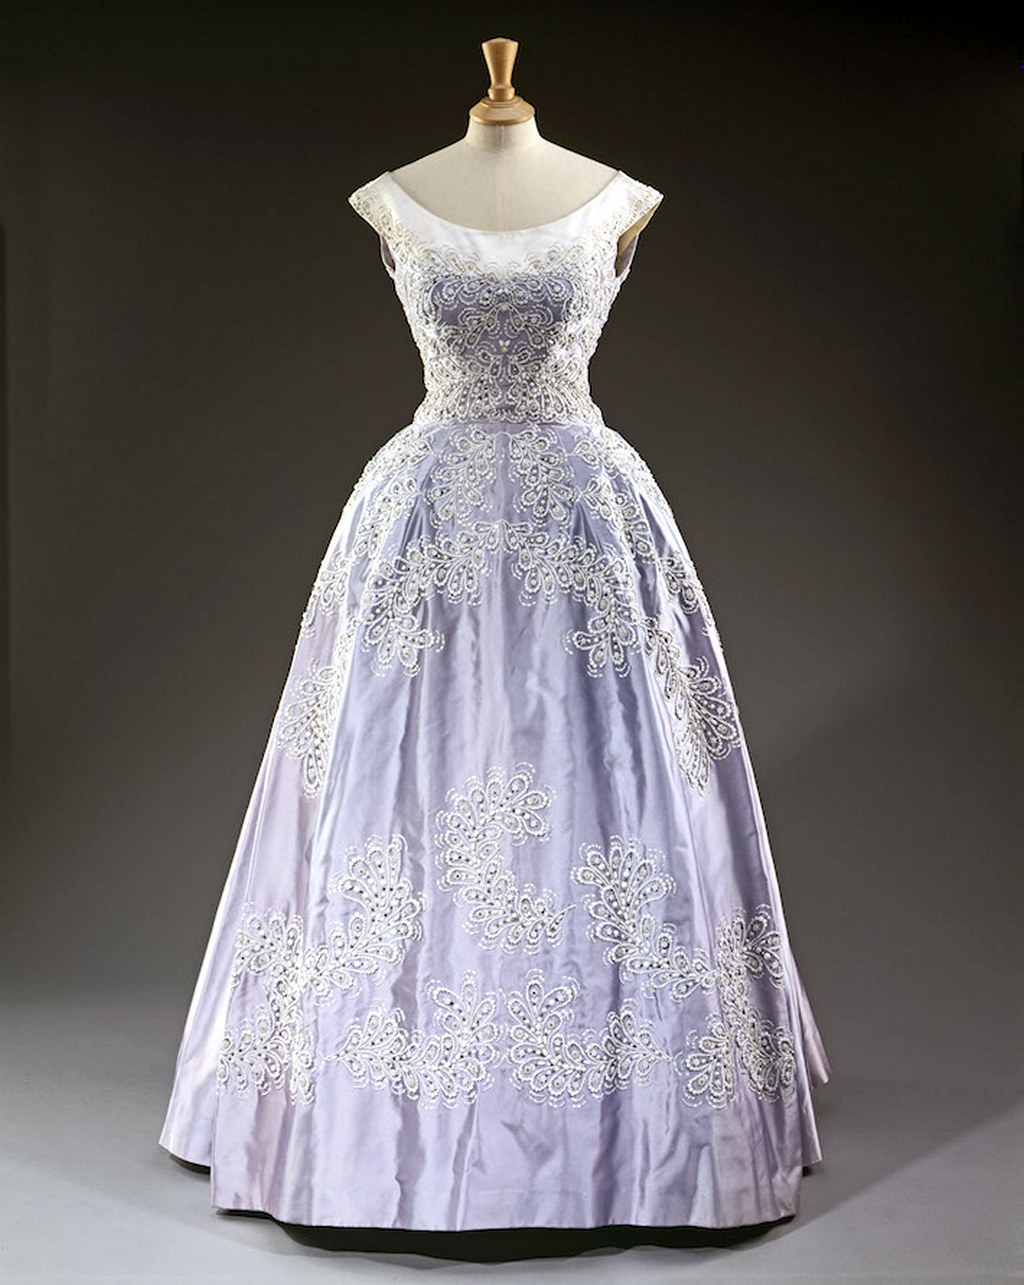 Шелковое вечернее платье королевы Елизаветы II